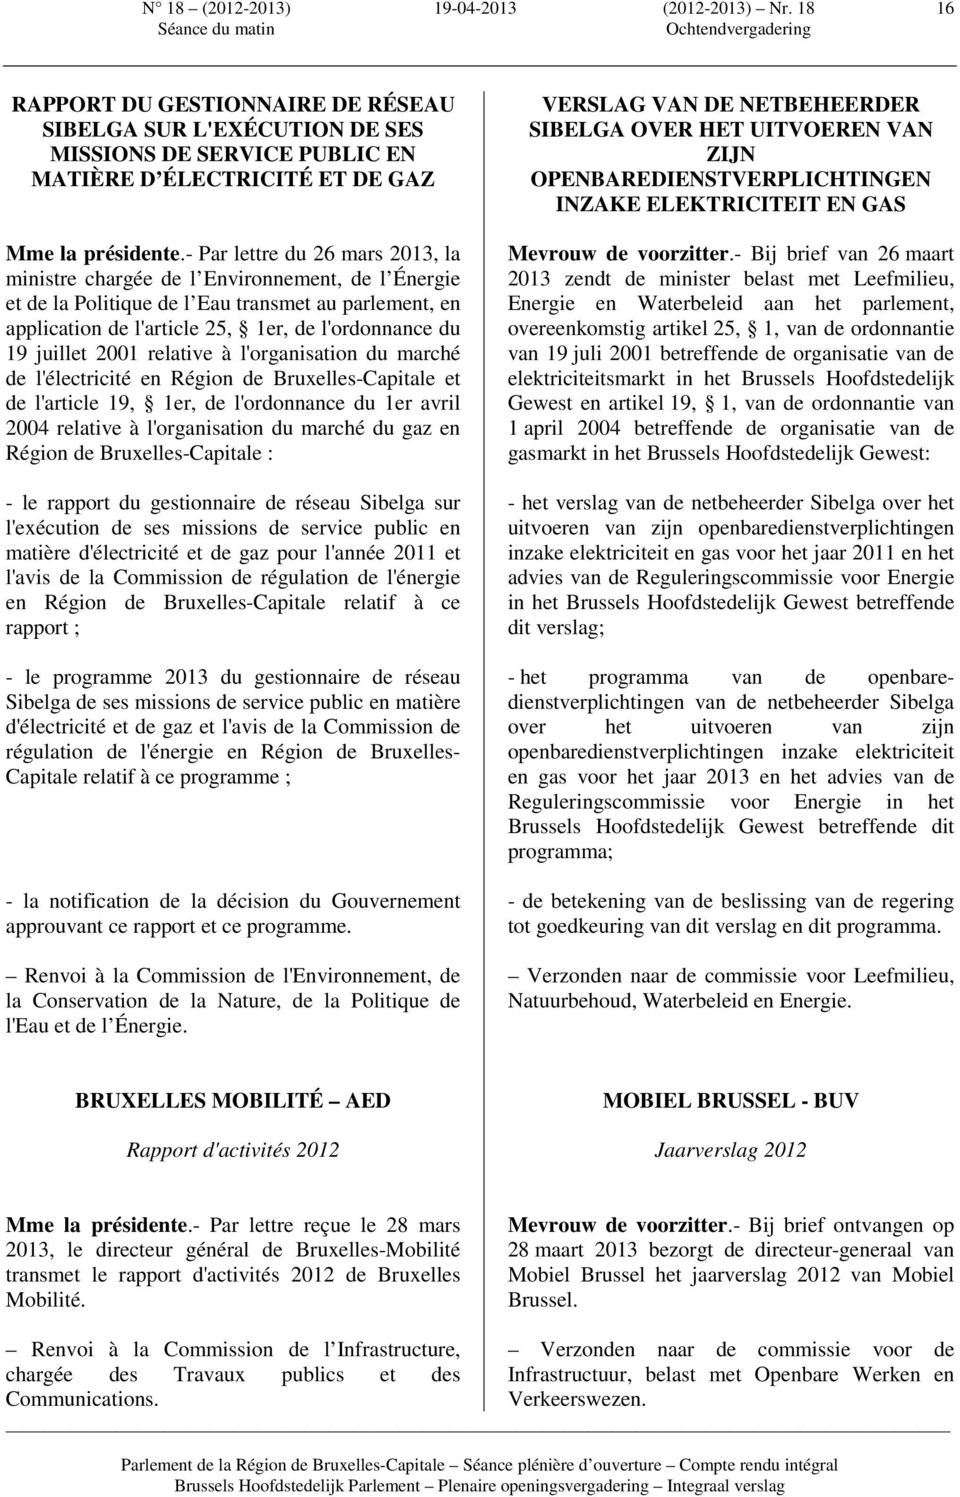 juillet 2001 relative à l'organisation du marché de l'électricité en Région de Bruxelles-Capitale et de l'article 19, 1er, de l'ordonnance du 1er avril 2004 relative à l'organisation du marché du gaz